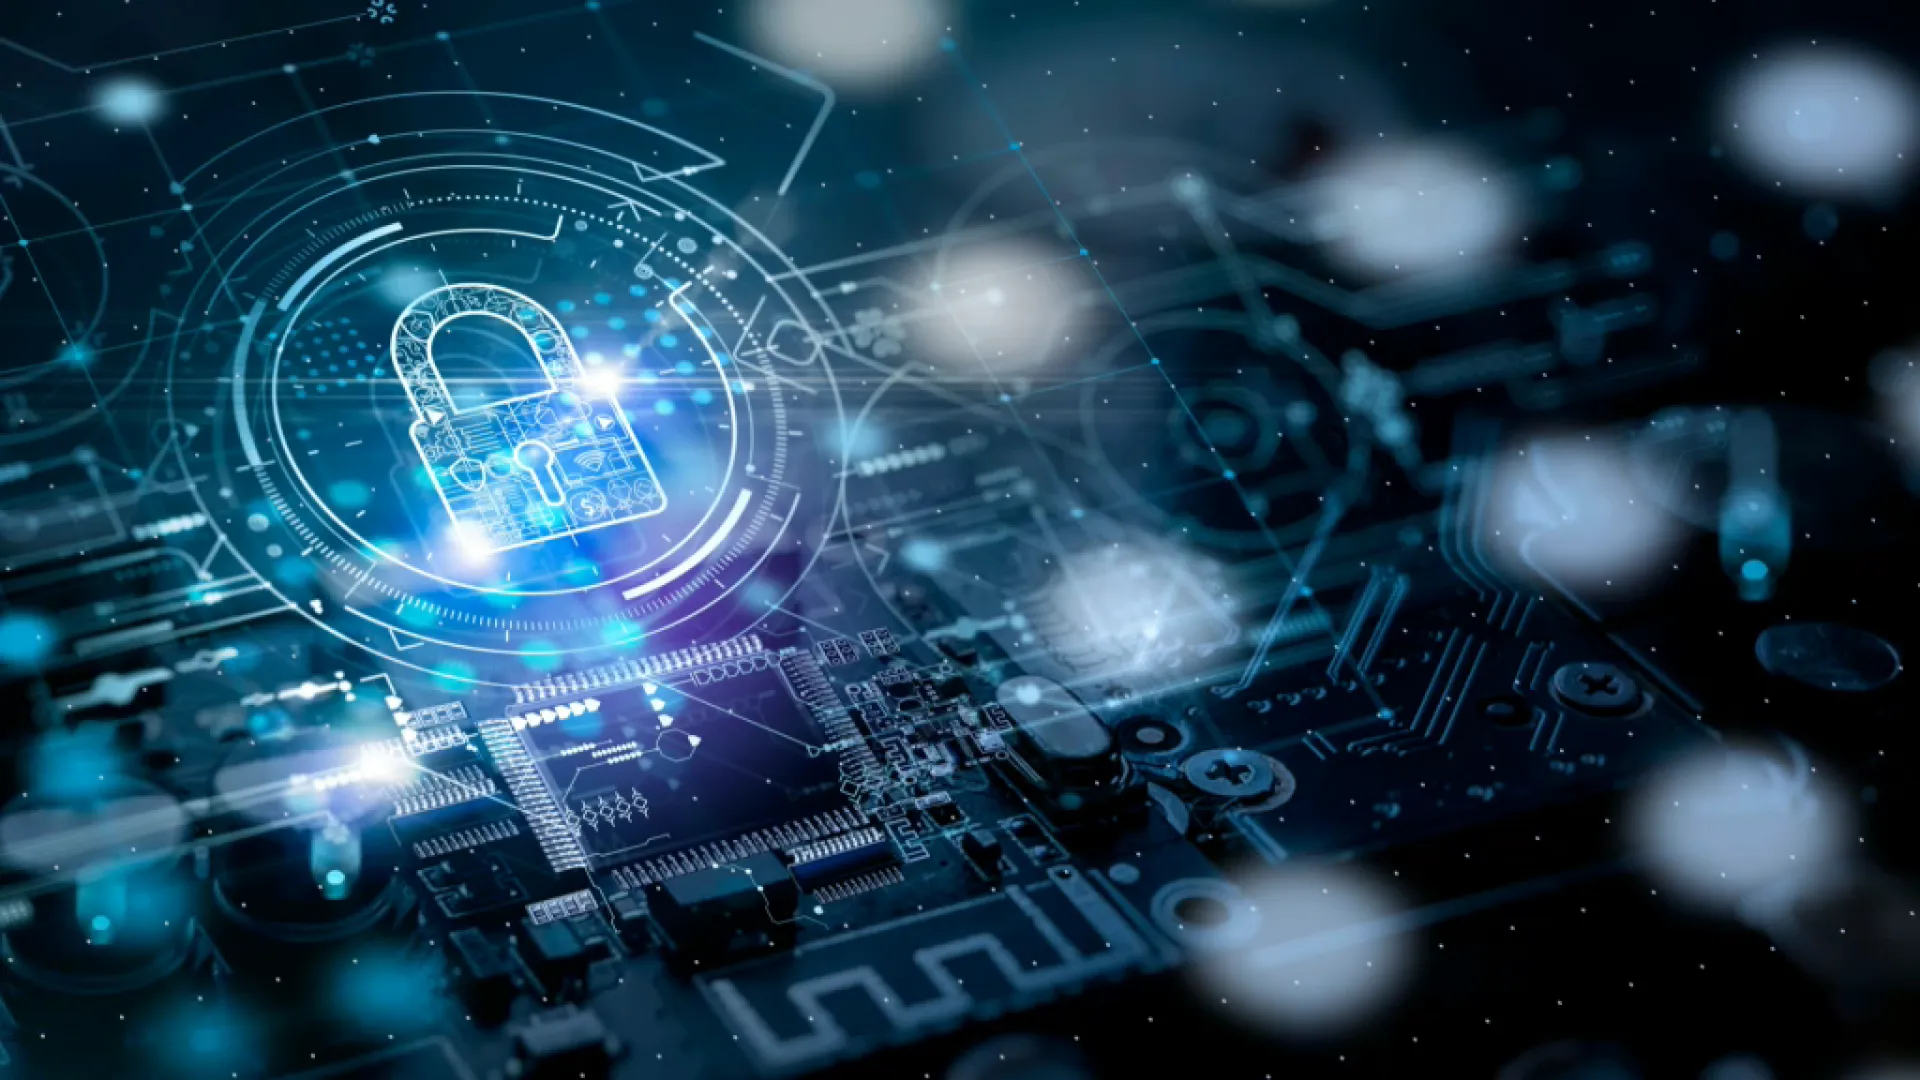 L’INCIBE i la UIB creen el programa Cybercamp per lluitar contra la ciberdelinqüència i fomentar la seguretat digital